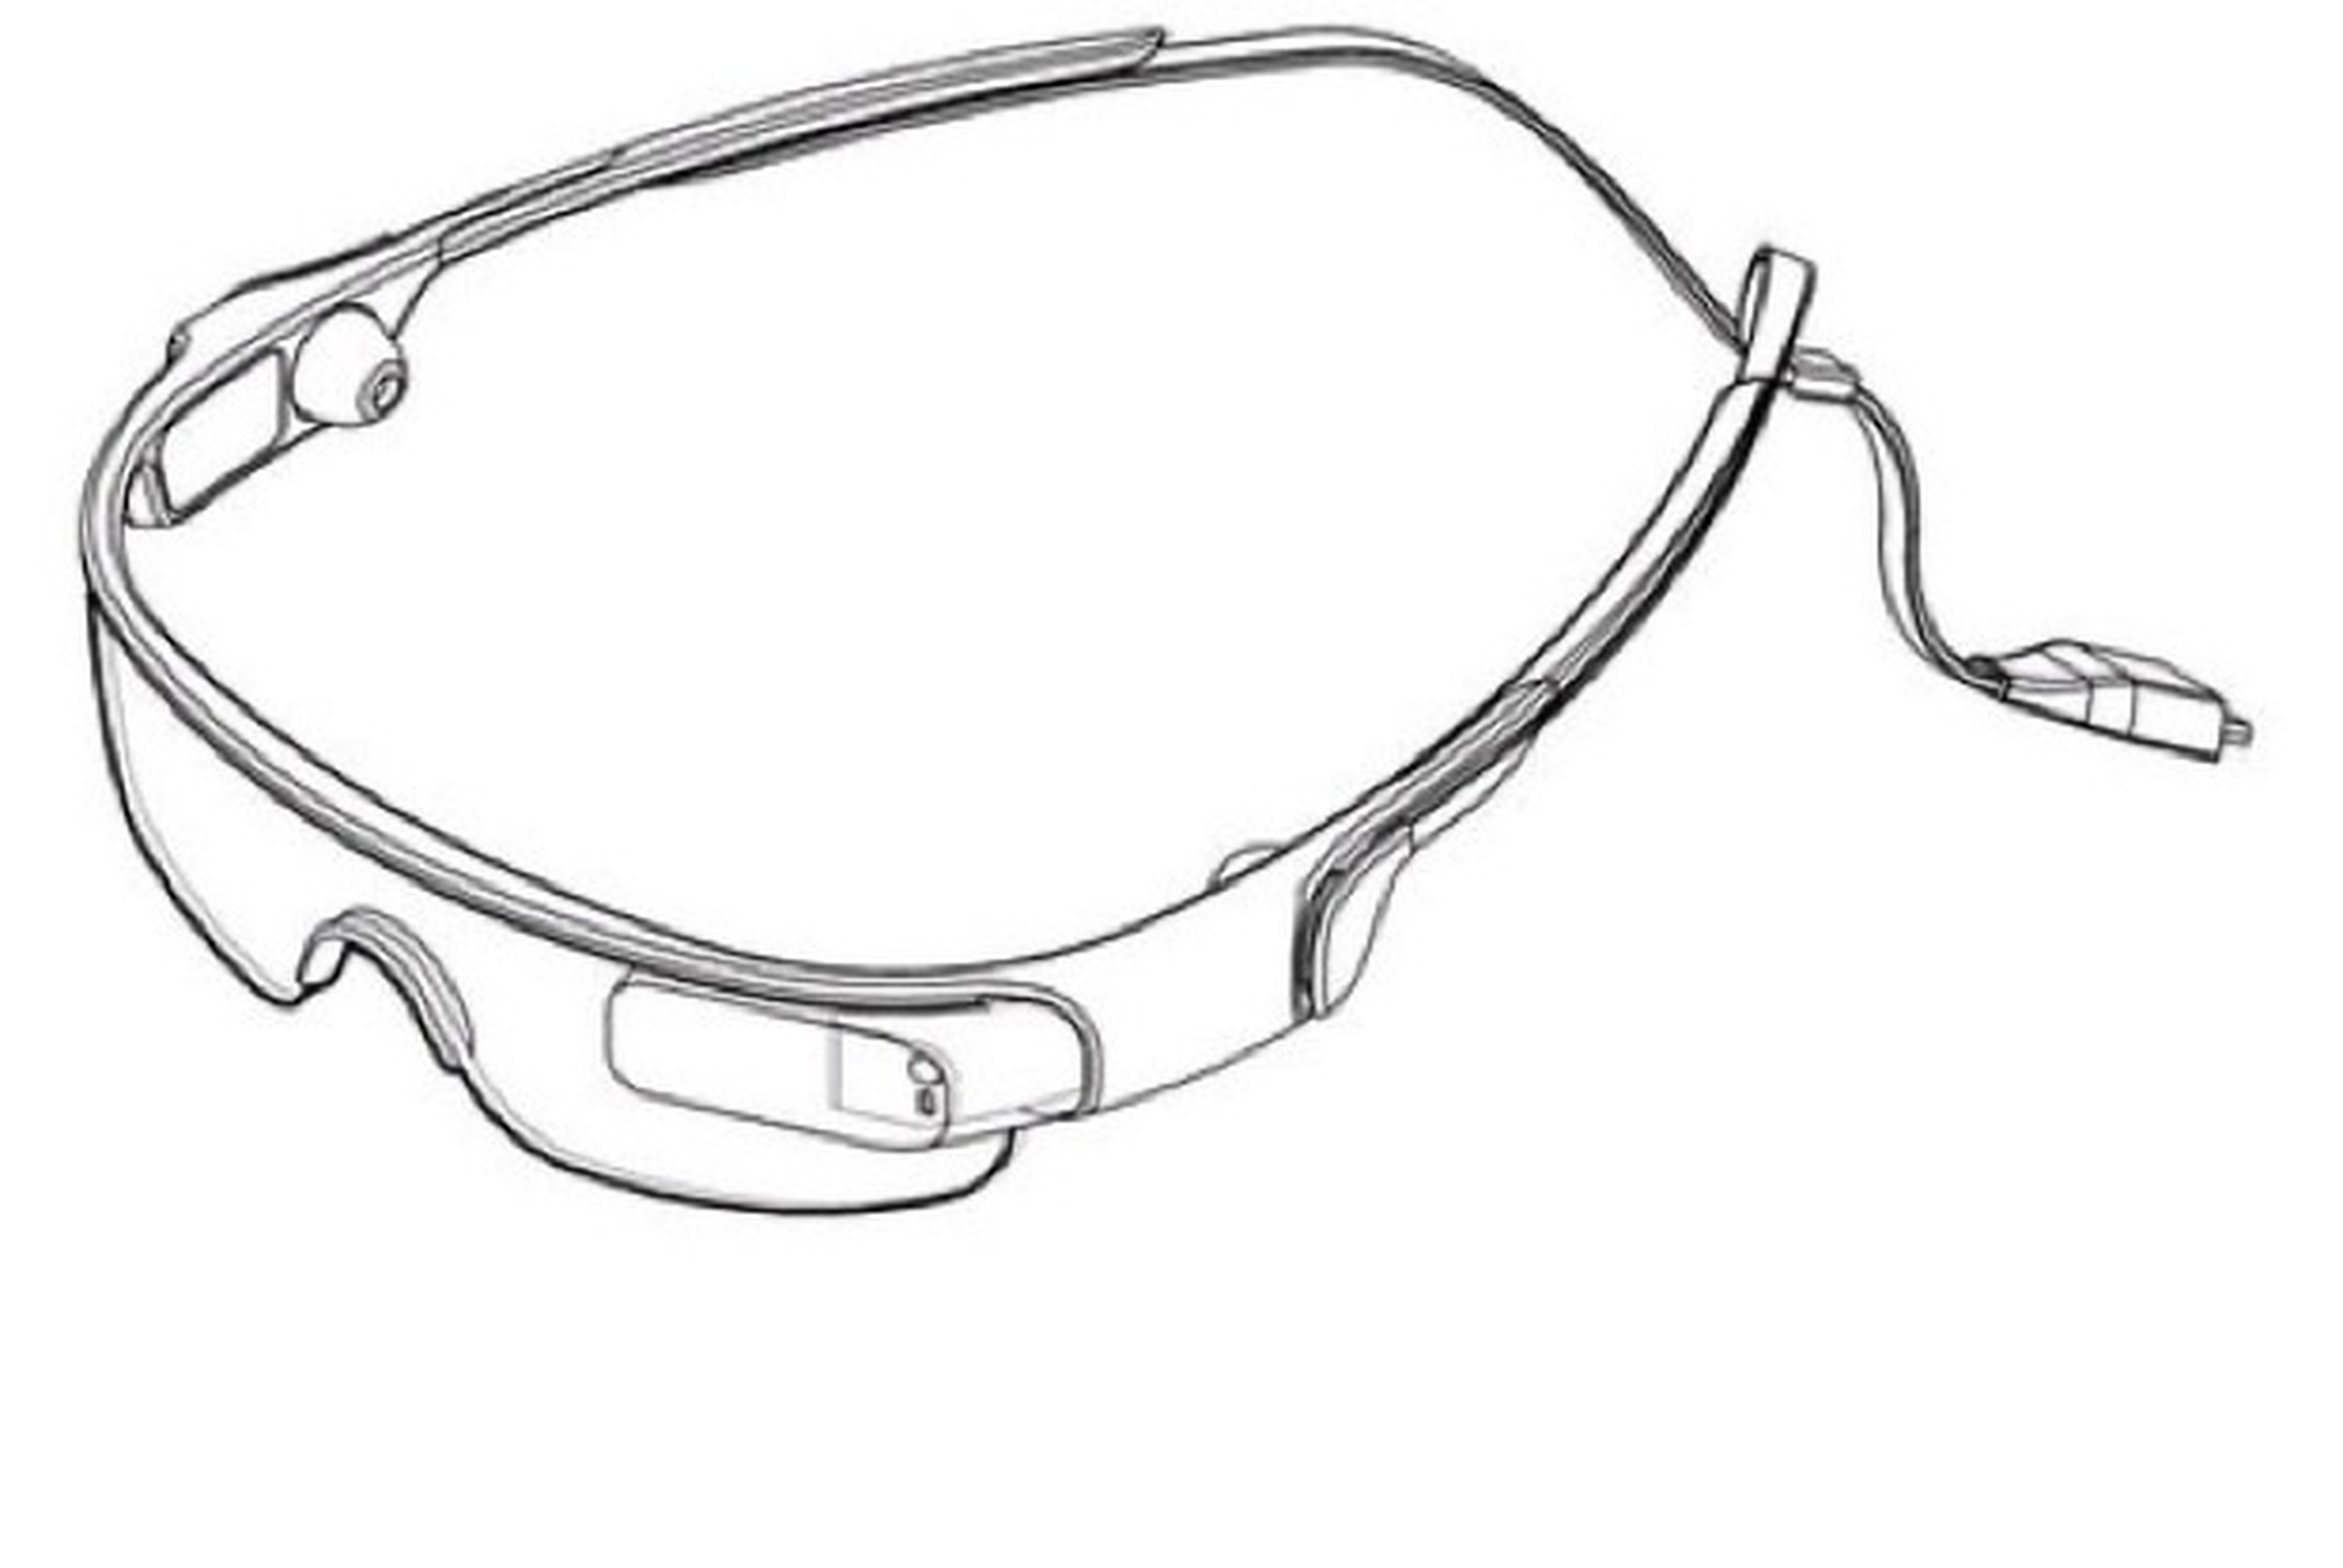 Samsung presenta patente de diseño de gafas inteligentes